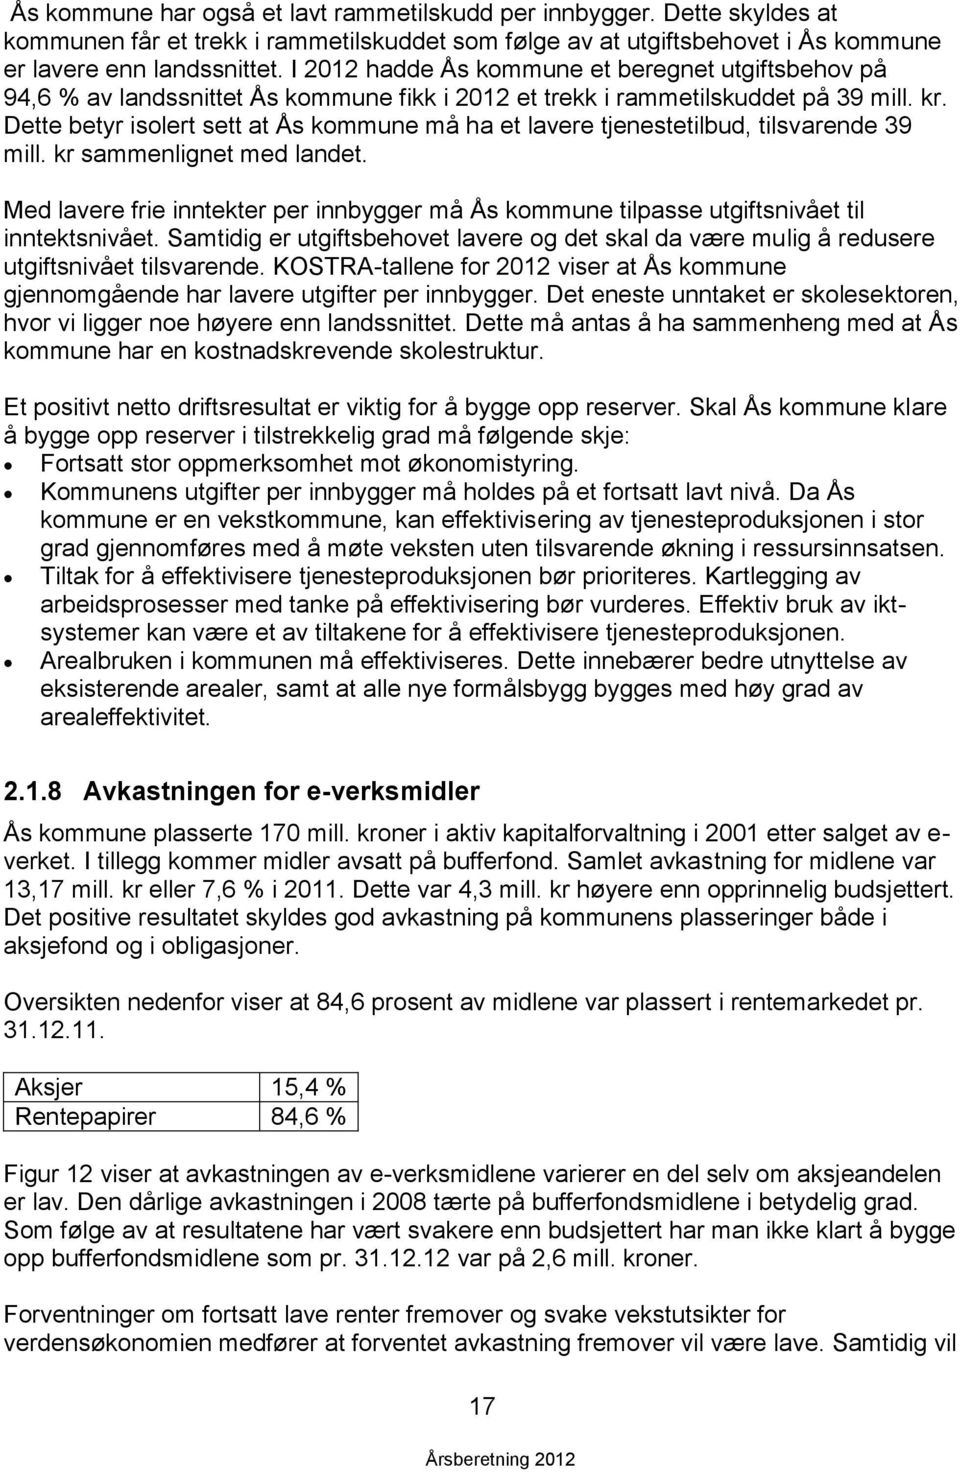 Dette betyr isolert sett at Ås kommune må ha et lavere tjenestetilbud, tilsvarende 39 mill. kr sammenlignet med landet.